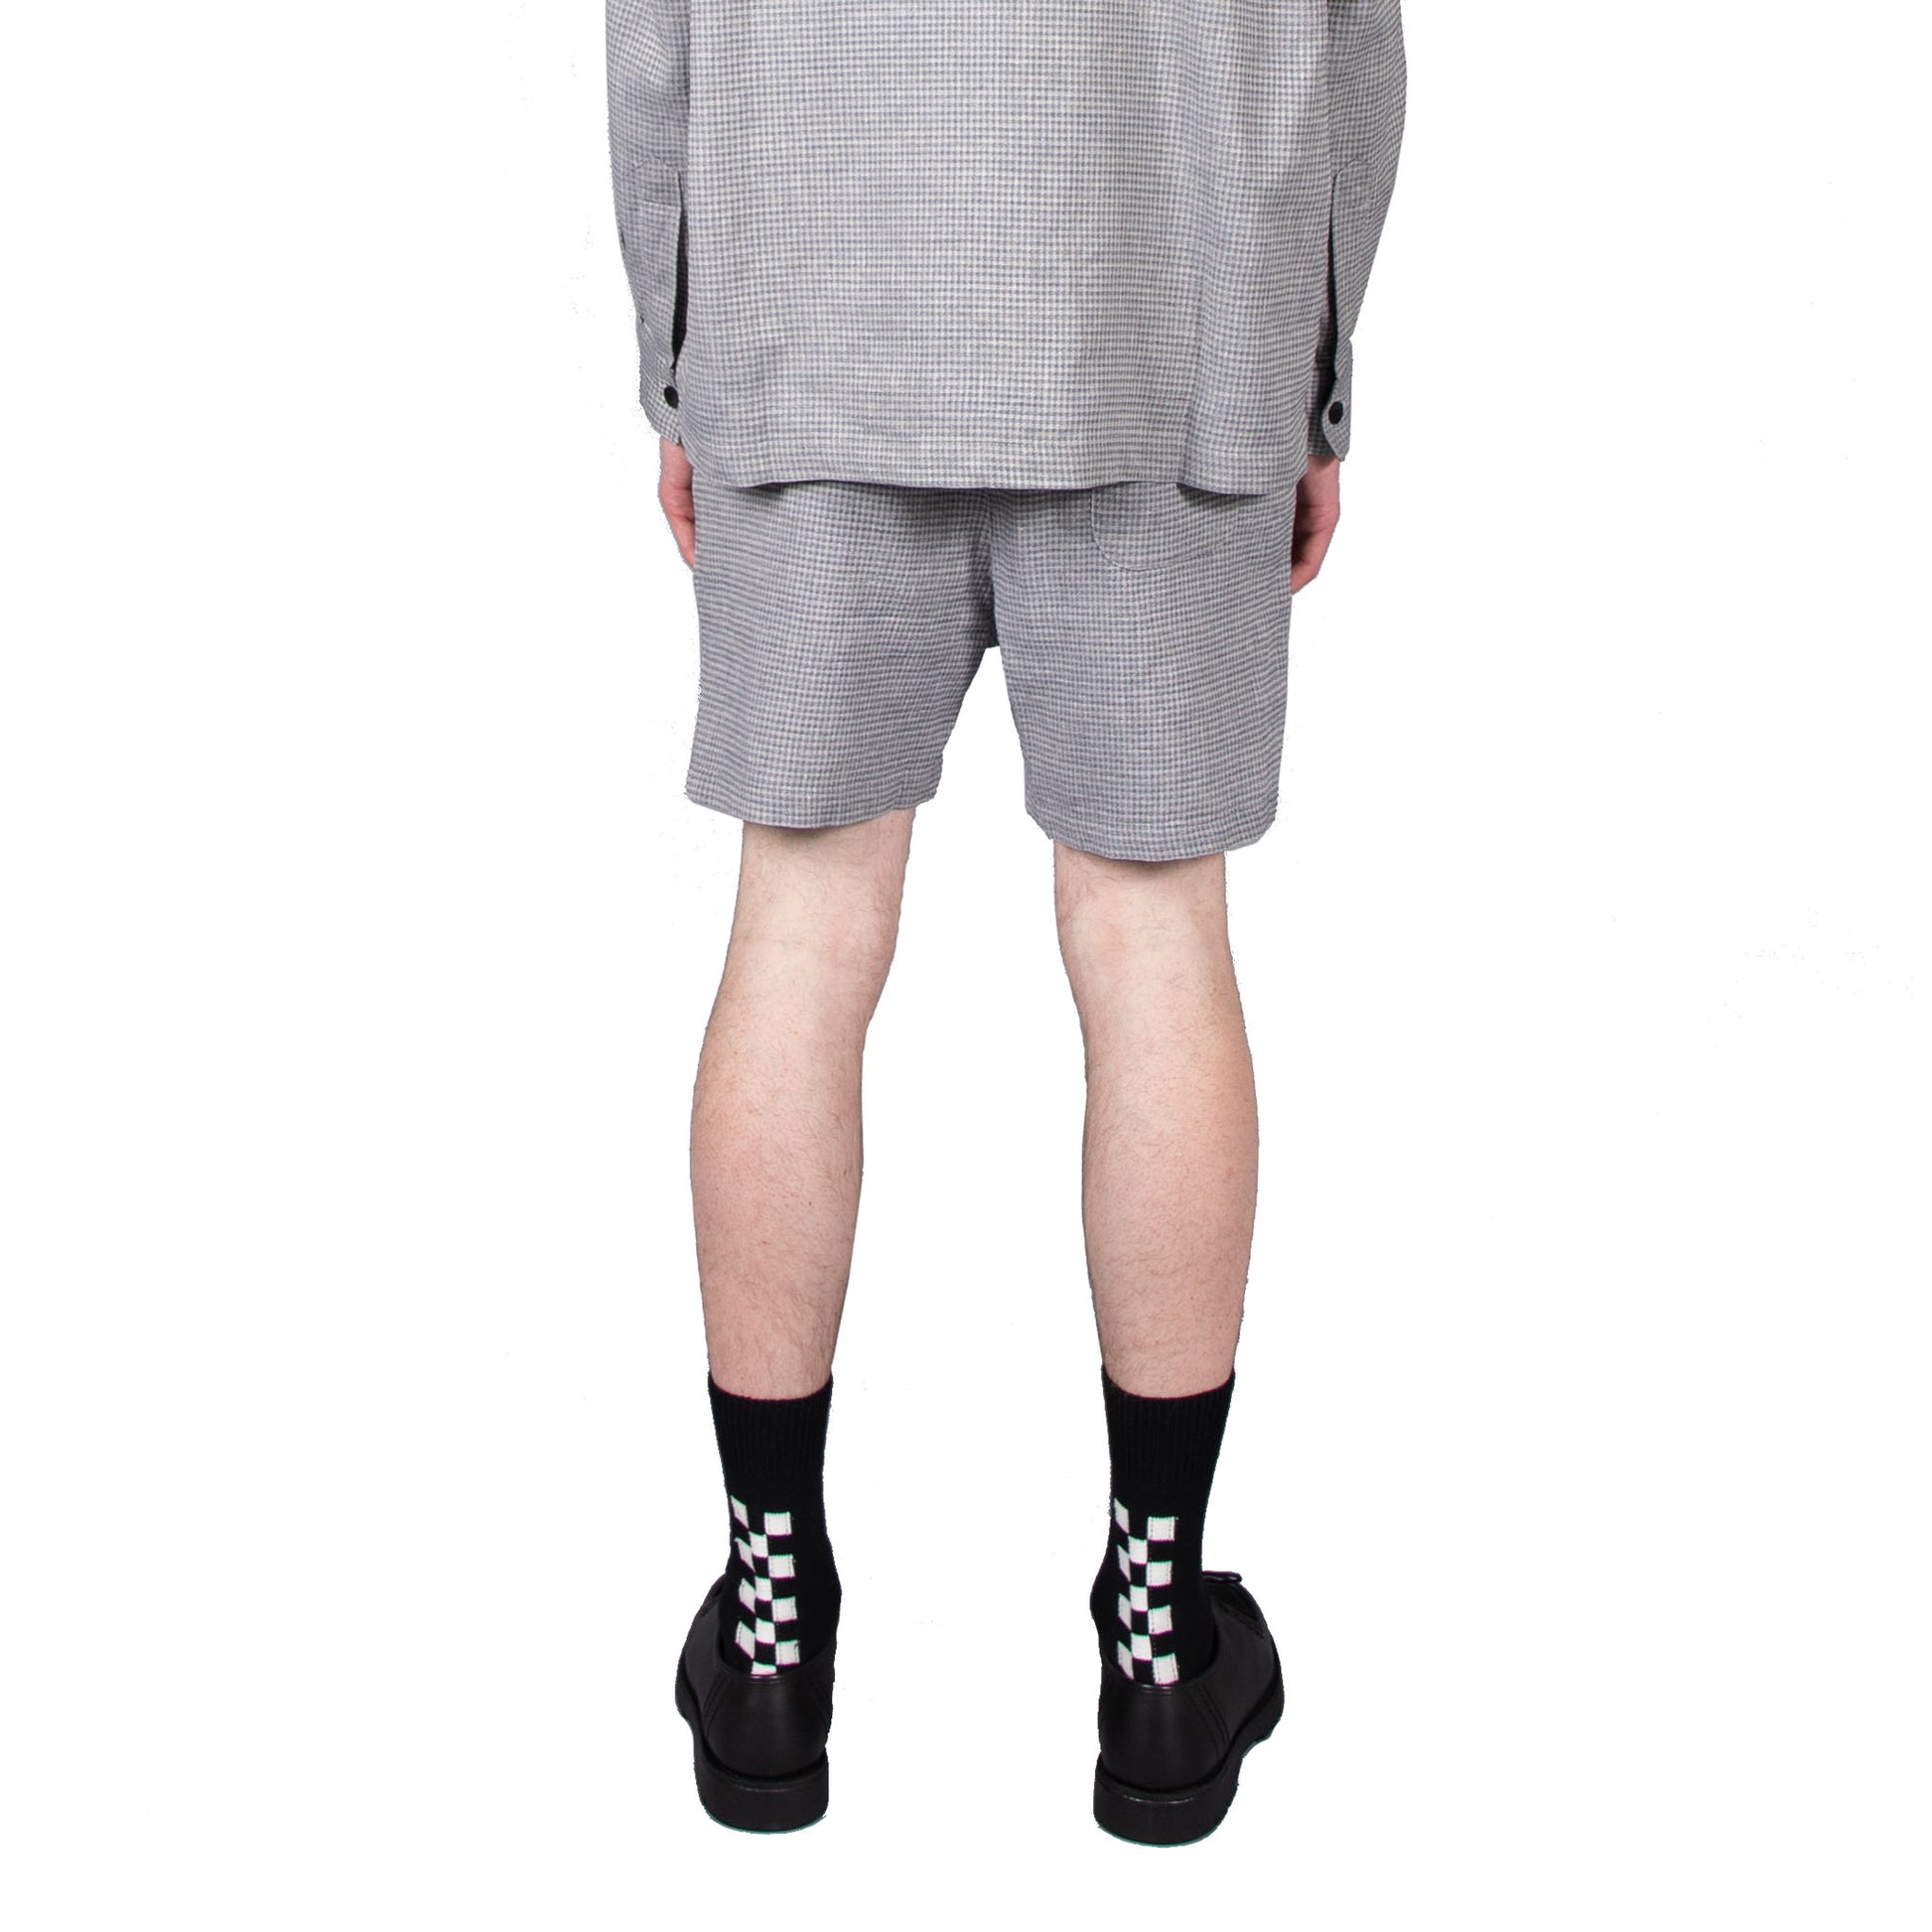 Shop Schnayderman's shorts online Melange shorts check blue grey